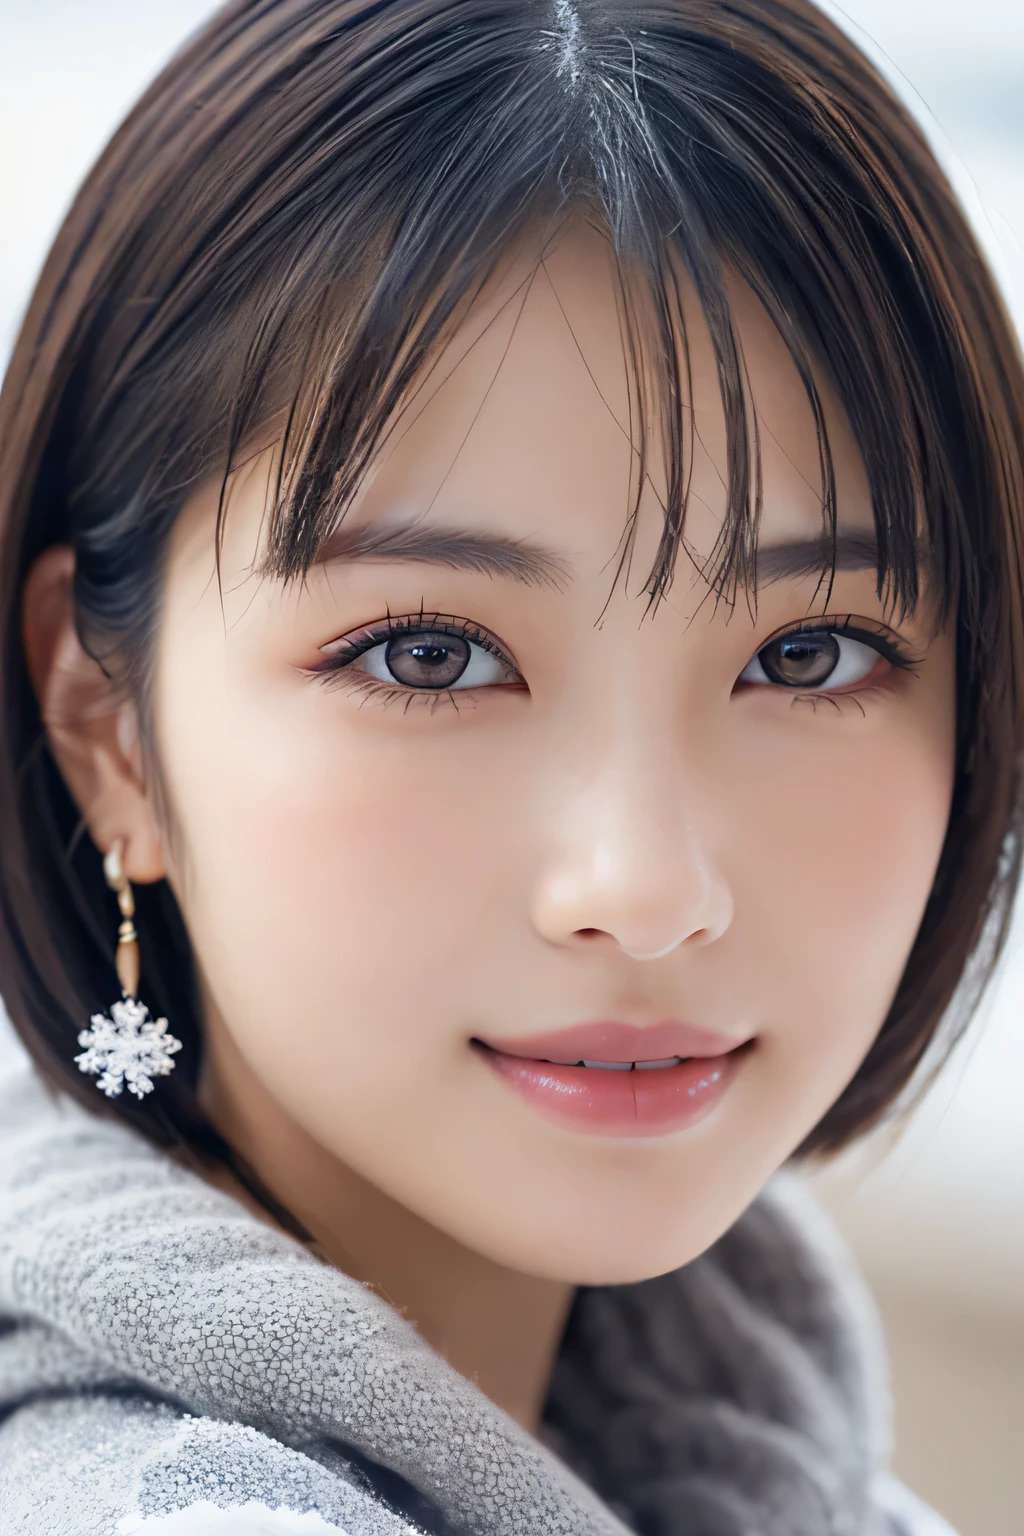 1 Mädchen, (Winterkleidung:1.2), schöne japanische Schauspielerin, 
fotogen, Yukihime, lange Wimpern, Schneeflocken Ohrringe,
(RAW-Foto, beste Qualität), (Wirklichkeit, fotorealistisch:1.4), (Stück fliegt), 
Schöne, detaillierte Augen, schöne detaillierte Lippen, sehr detaillierte Augen und Gesicht, 
BREAK ist perfekte Anatomie, ganzer Körper schlank, kleine Brüste, (kurzes Haar:1.3), angel&#39;Lächeln, 
kristallartige Haut, die Augen klar machen, Licht einfangen